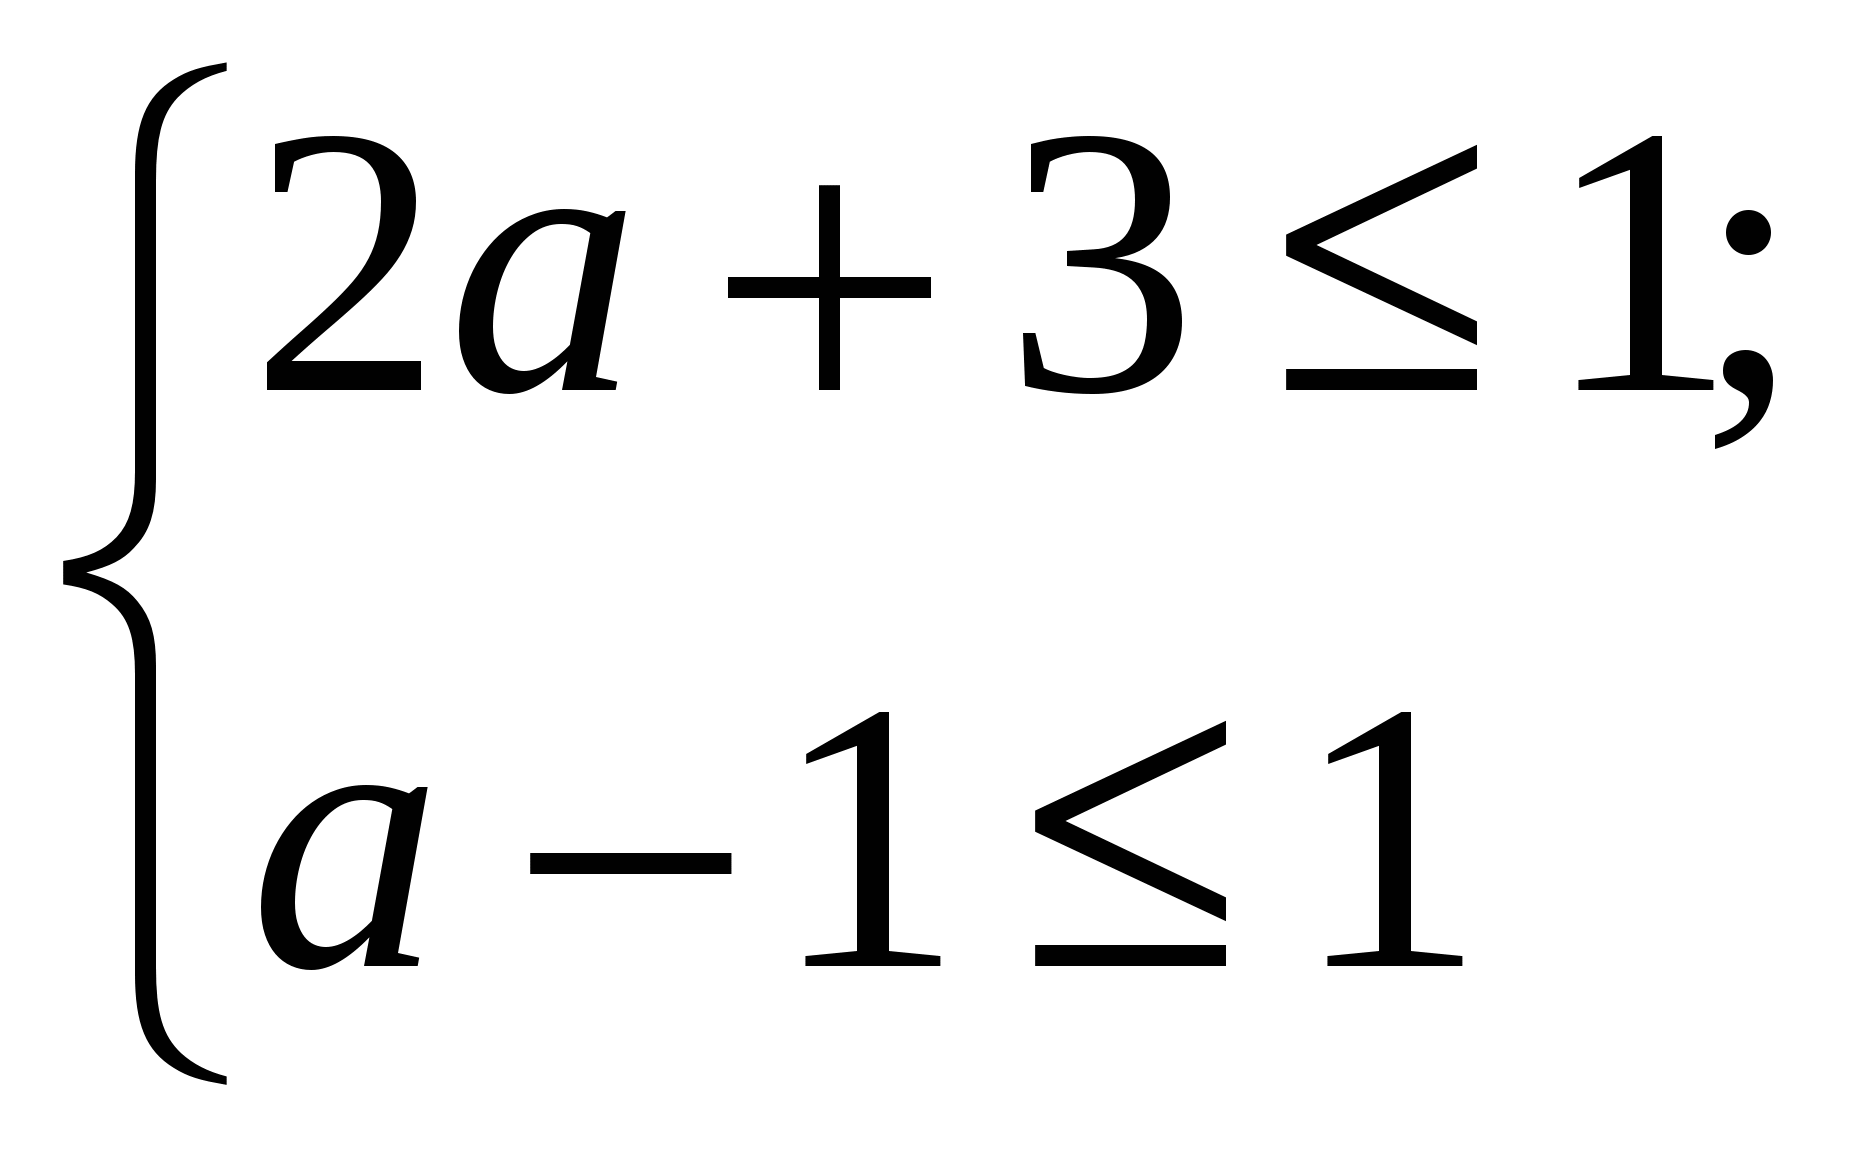 Методическая разработка «Многоуровневая система задач с параметром по теме «Квадратные уравнения» в курсе алгебры 8-го класса»